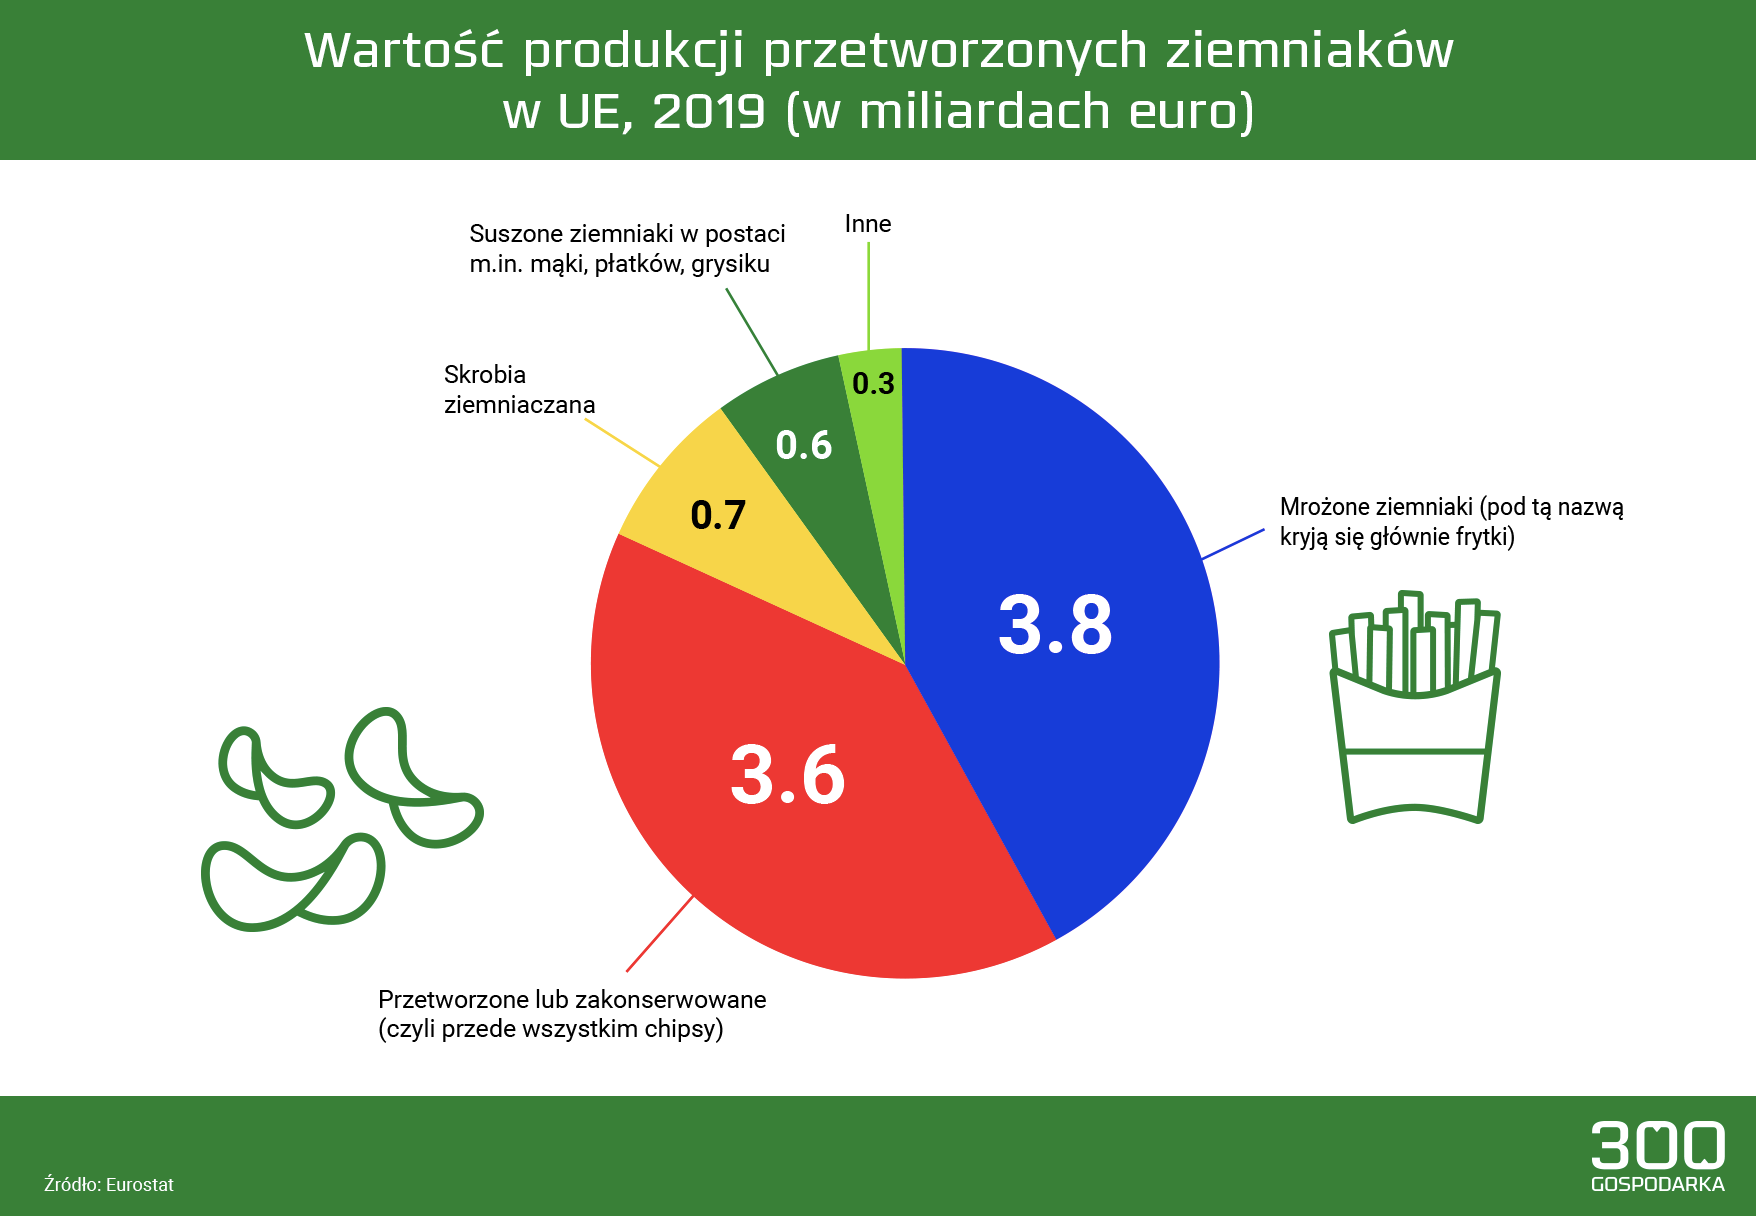 Wartość produkcji przetwarzanych ziemniaków w UE, 2019, mat. 300Gospodarka